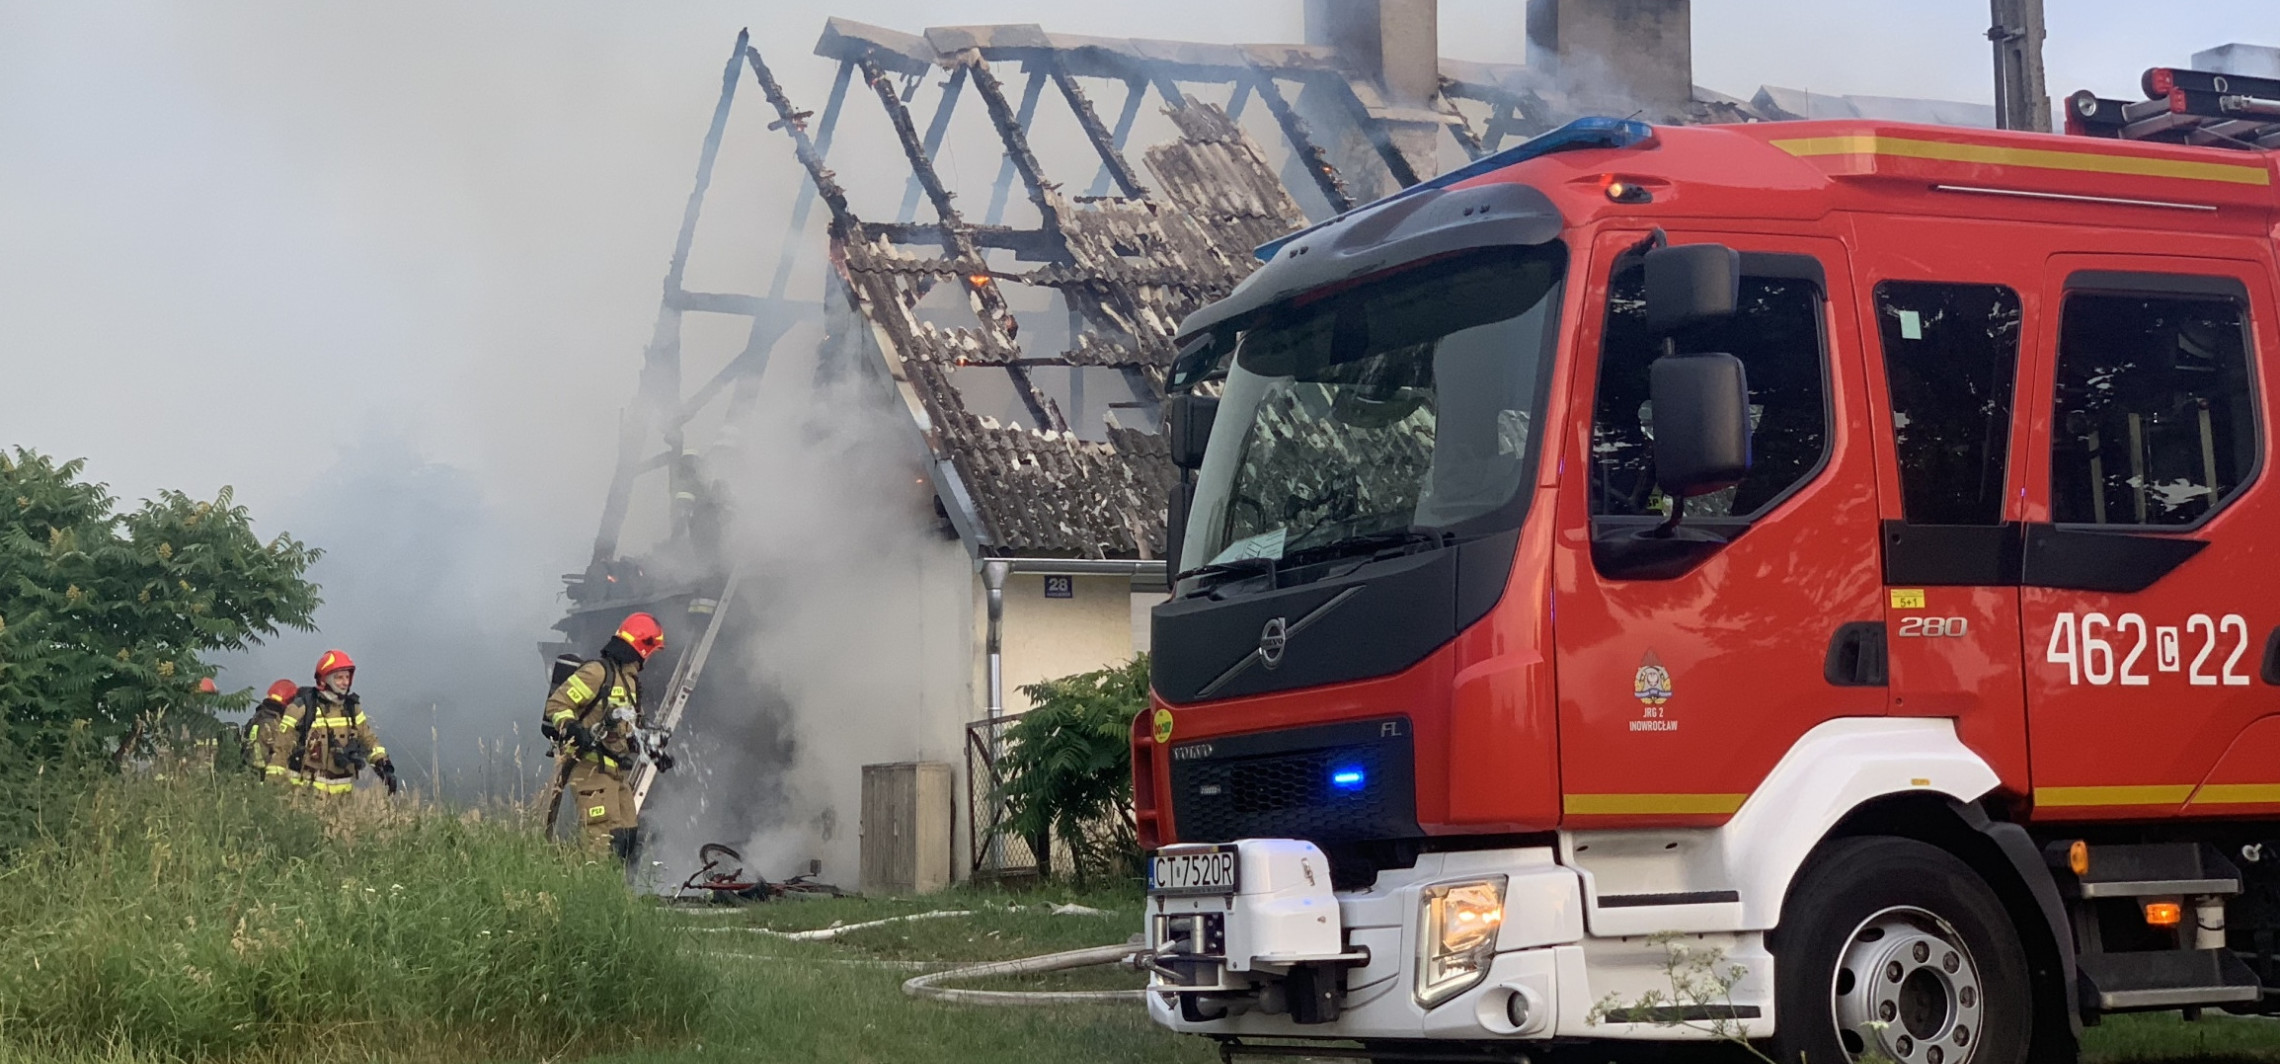 Region - Jedna osoba zginęła w pożarze domu pod Inowrocławiem